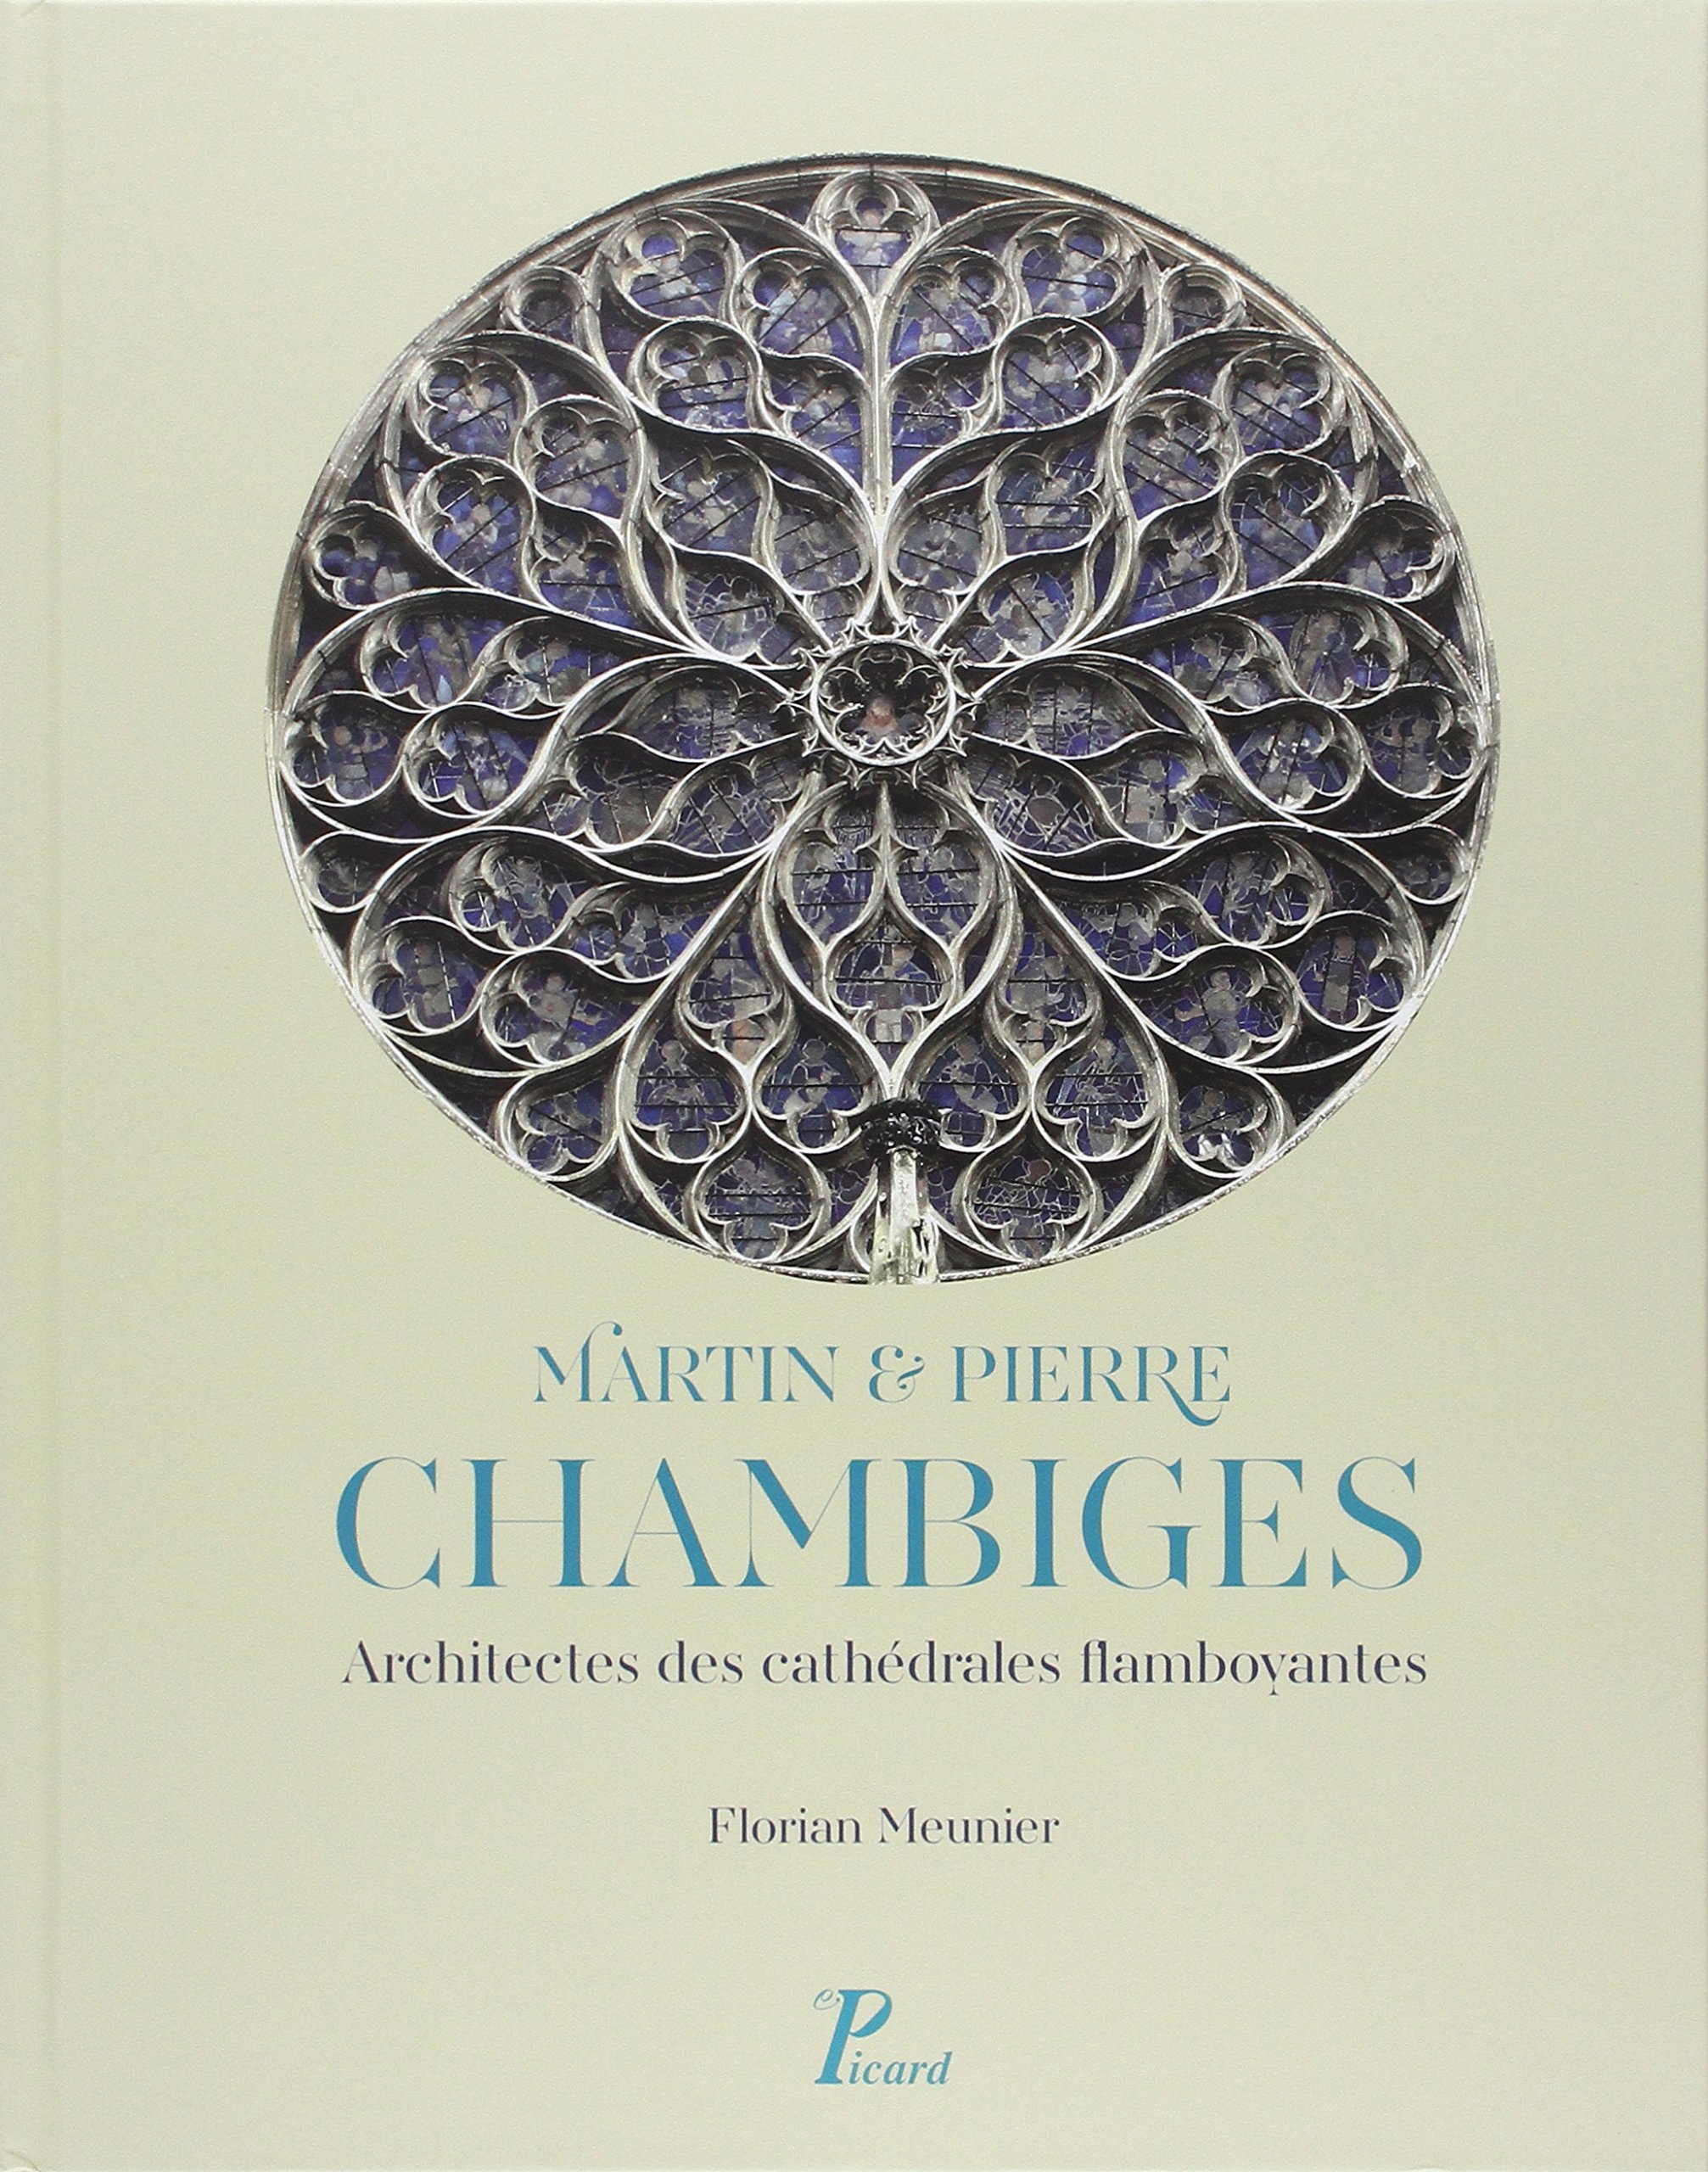 Martin et Pierre Chambiges. Architectes des cathédrales flamboyantes, 2015, 359 p.